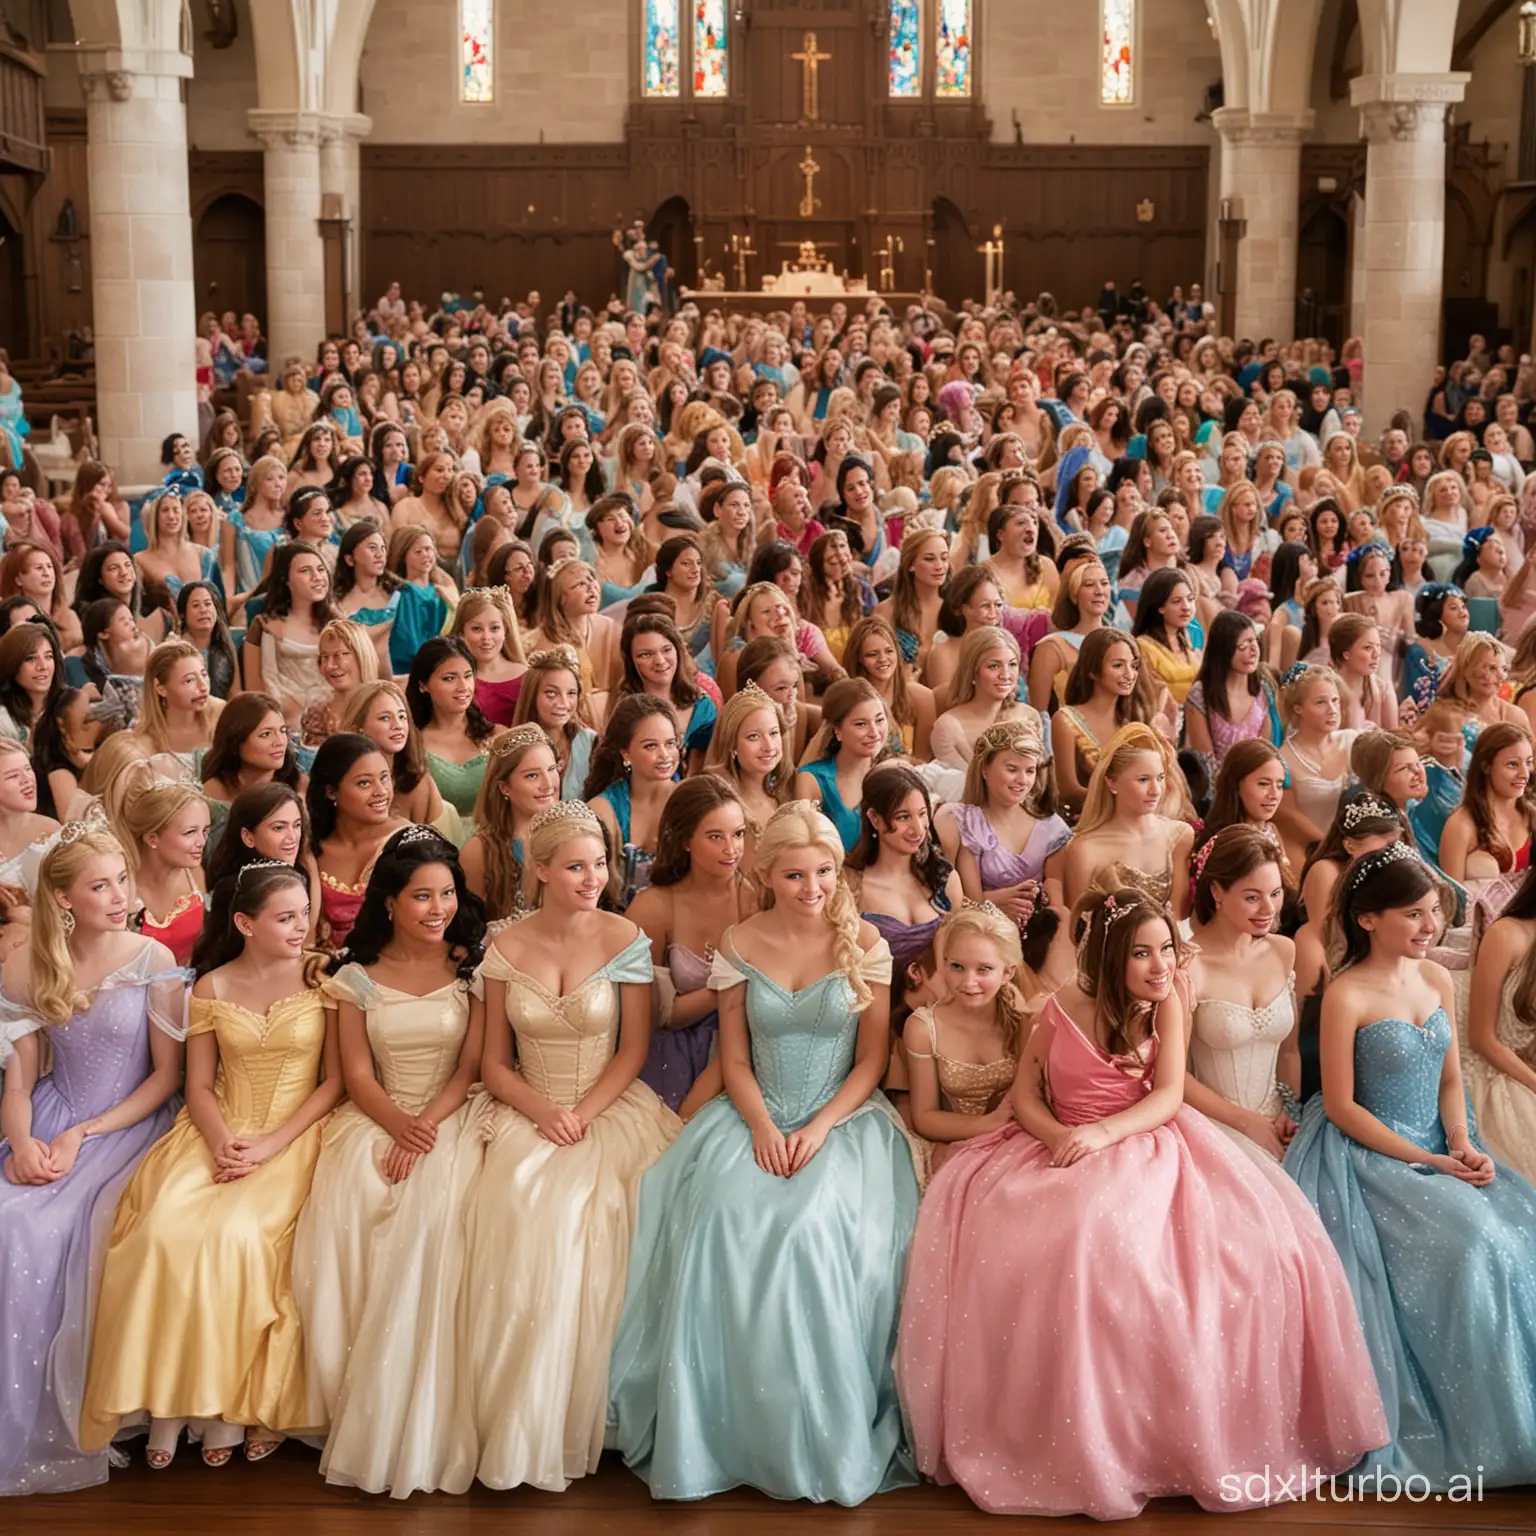 Multidão de princesas da Disney reunidas sentadas na igreja